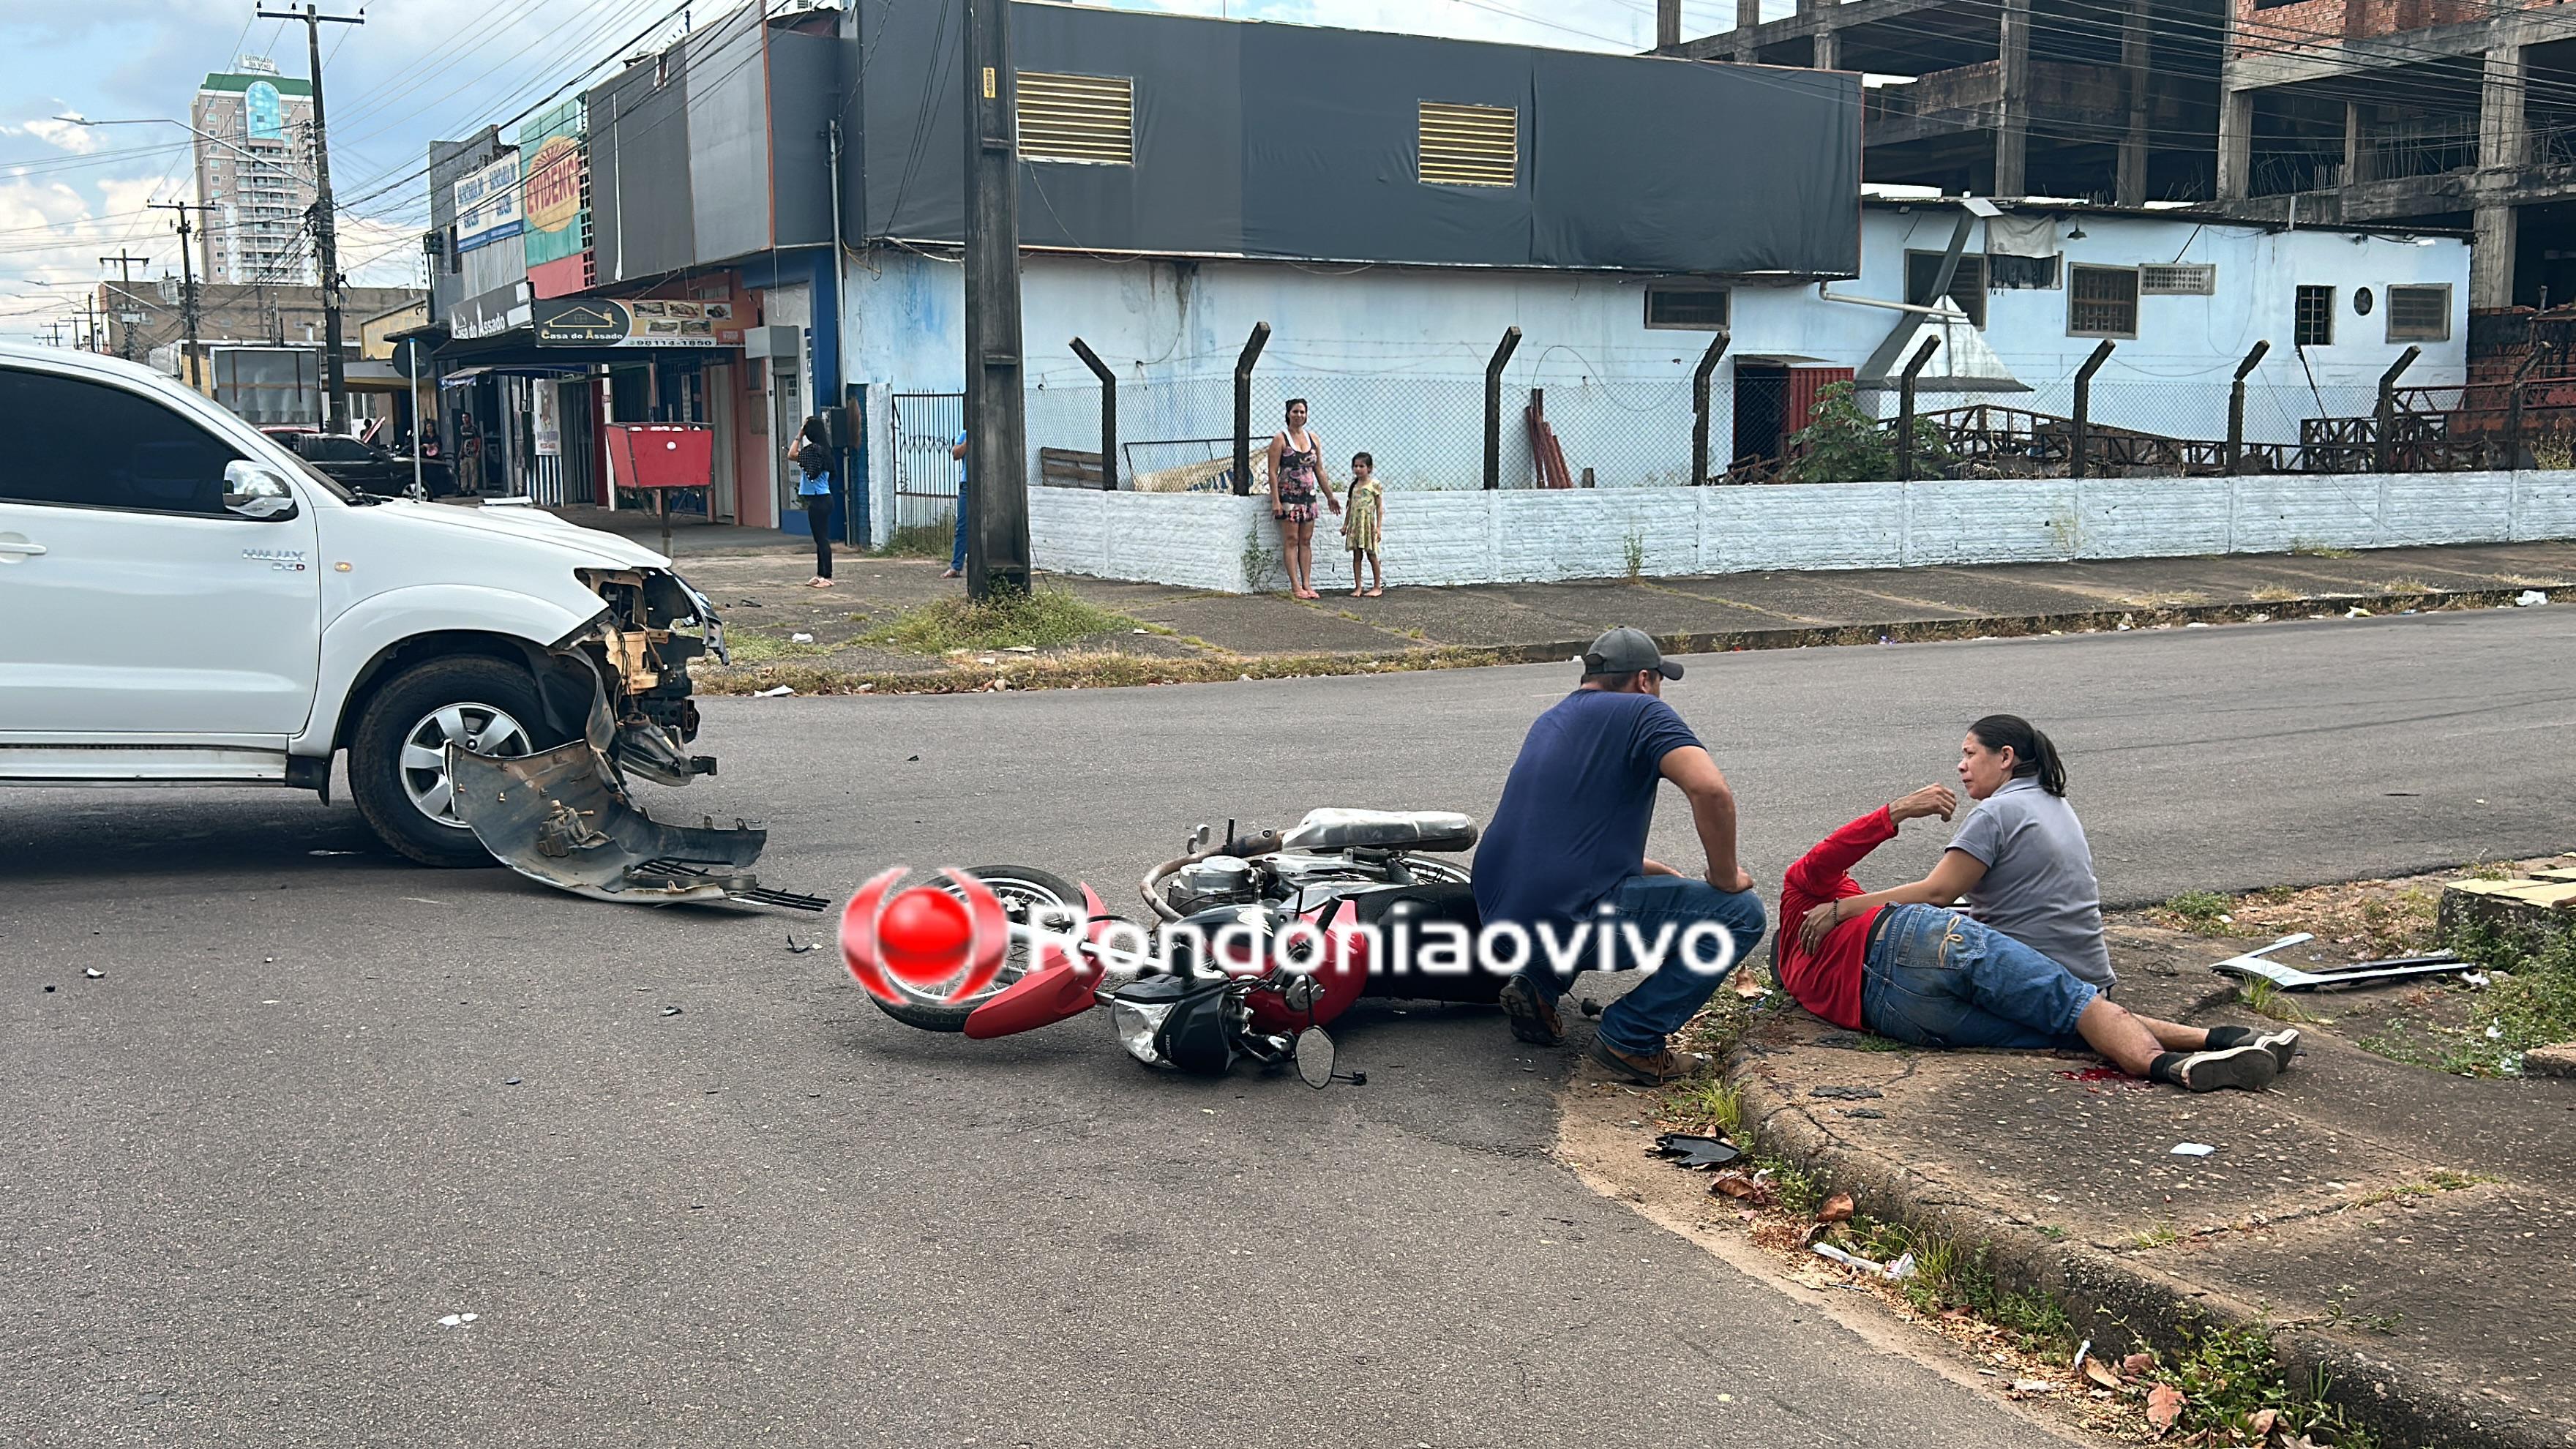 HILUX AVANÇOU: Motociclista sofre gravíssima fratura exposta em acidente no Centro